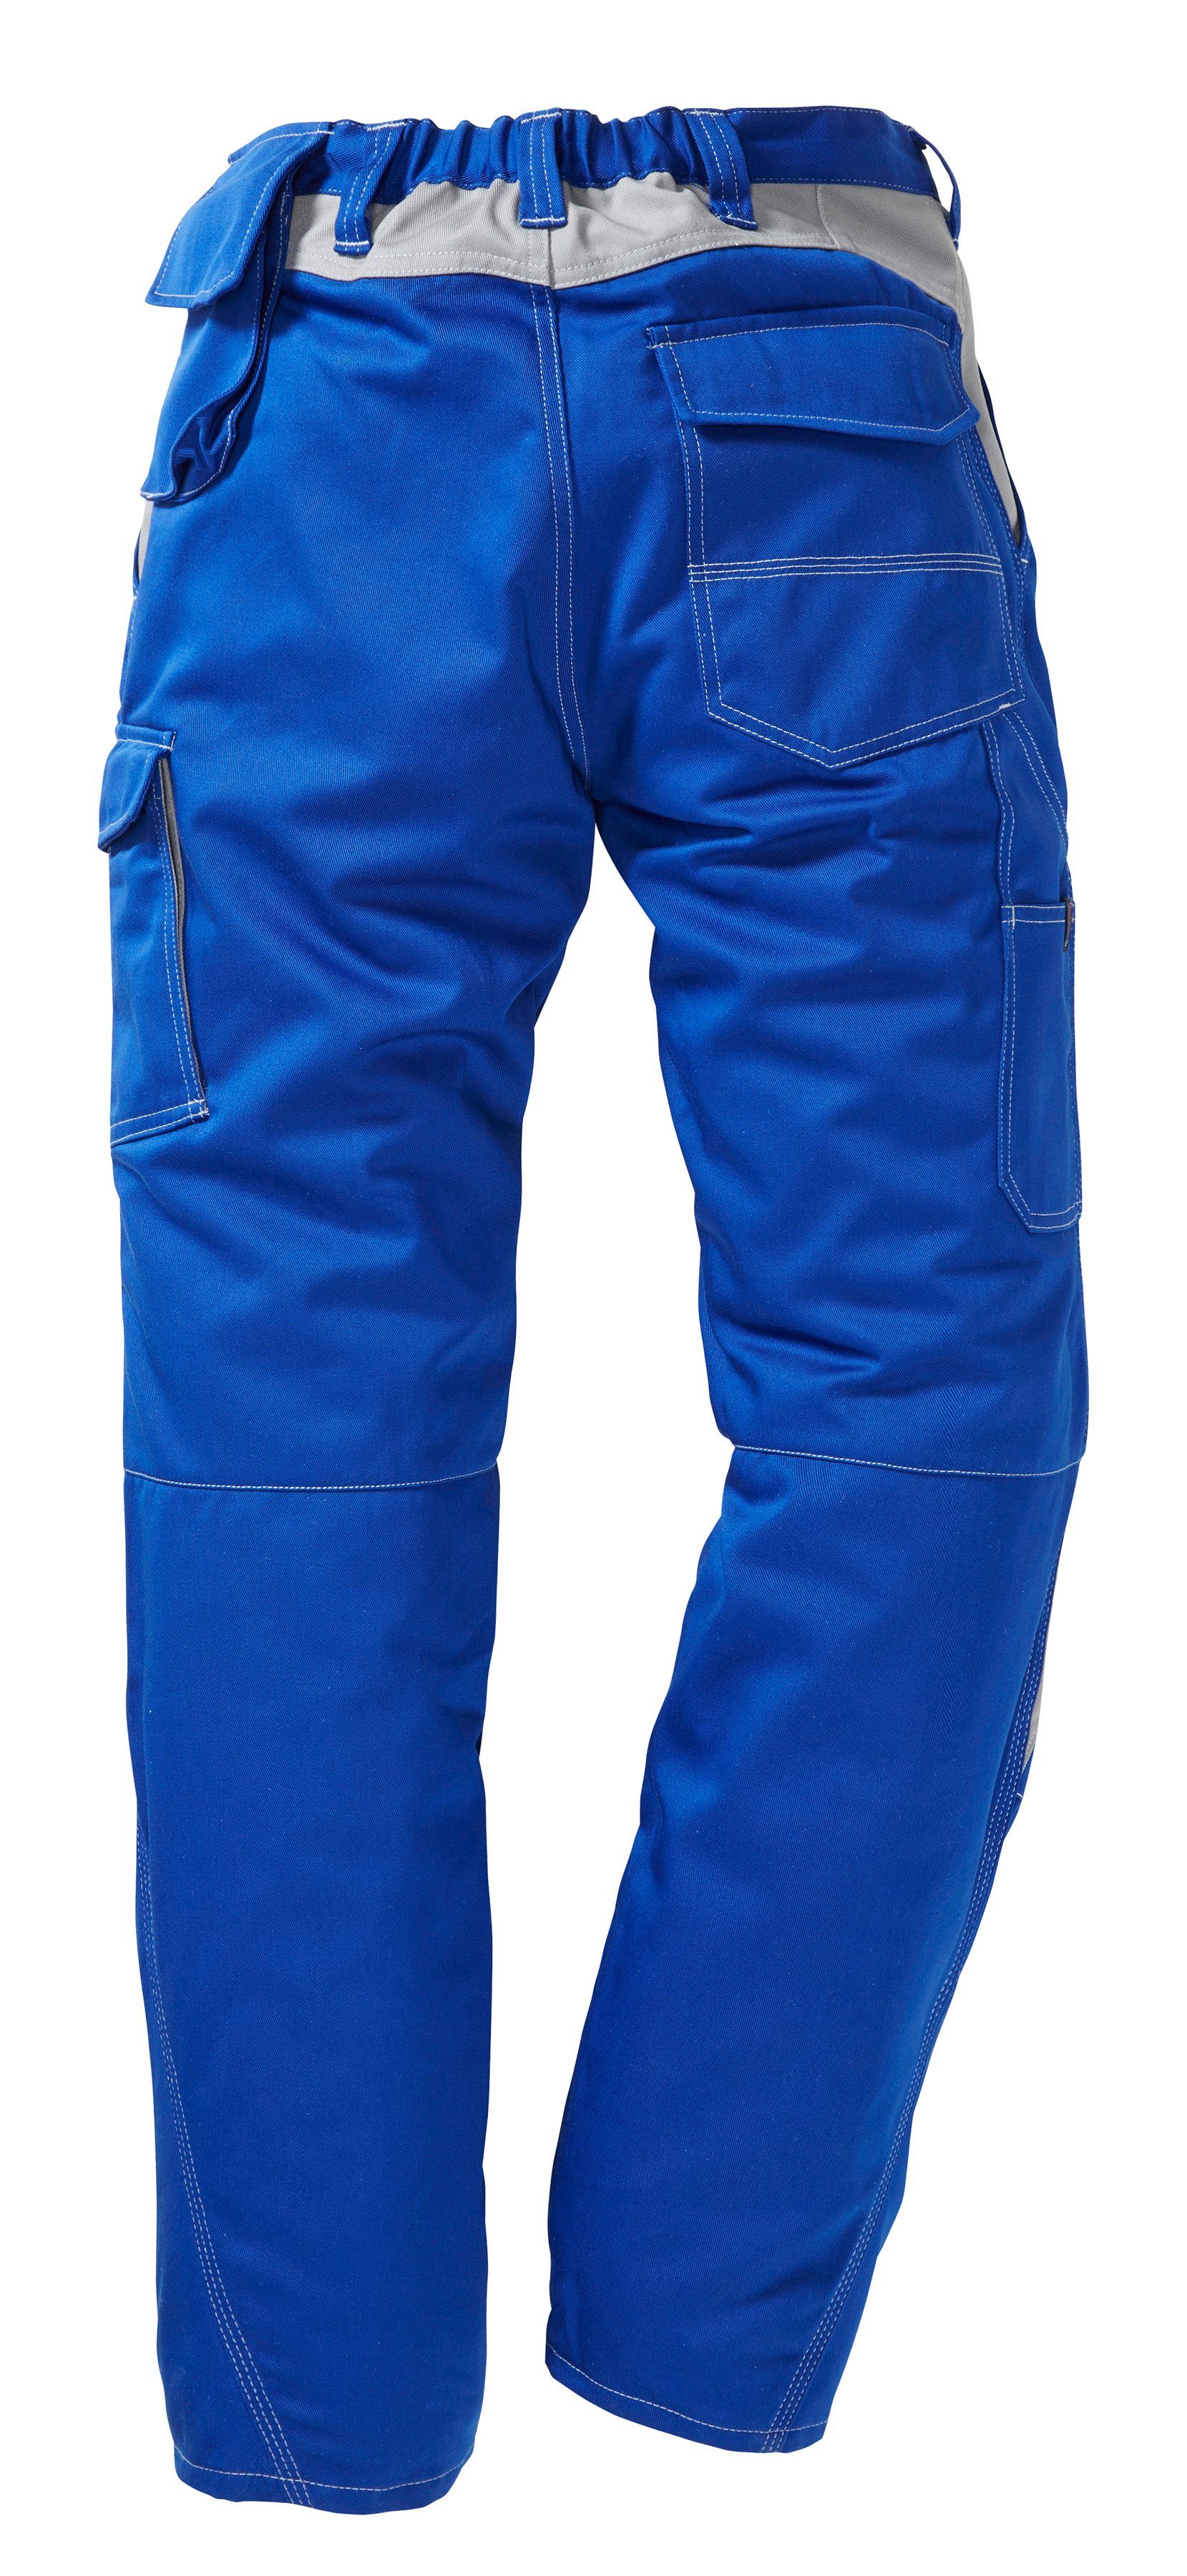 Kübler mit Arbeitshose blau-grau Kniepolstertaschen